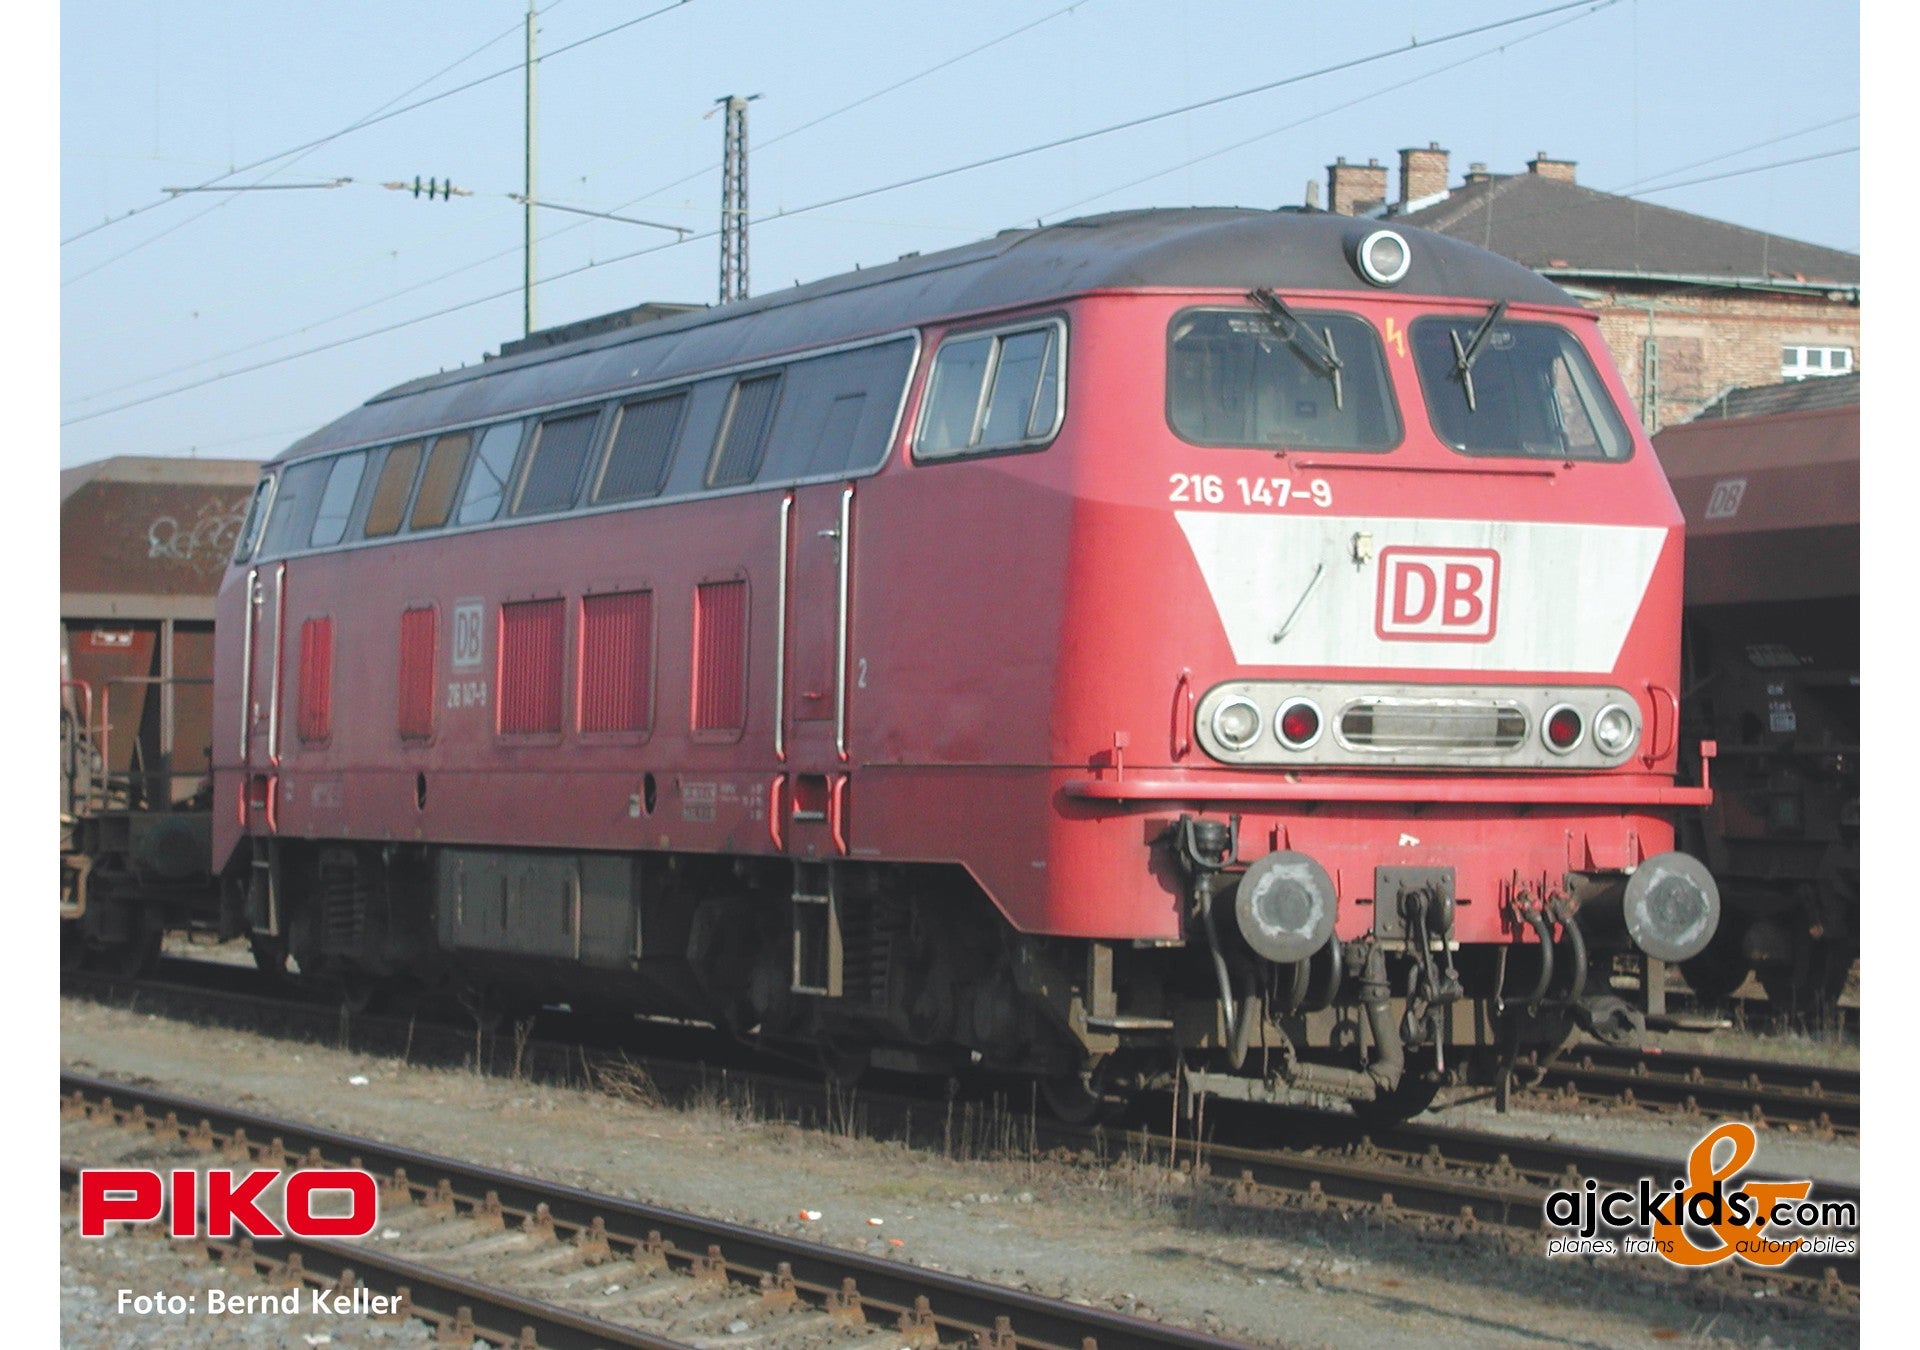 Piko 52413 - BR 216 Diesel Locomotive DB "Bib scheme" V Sound